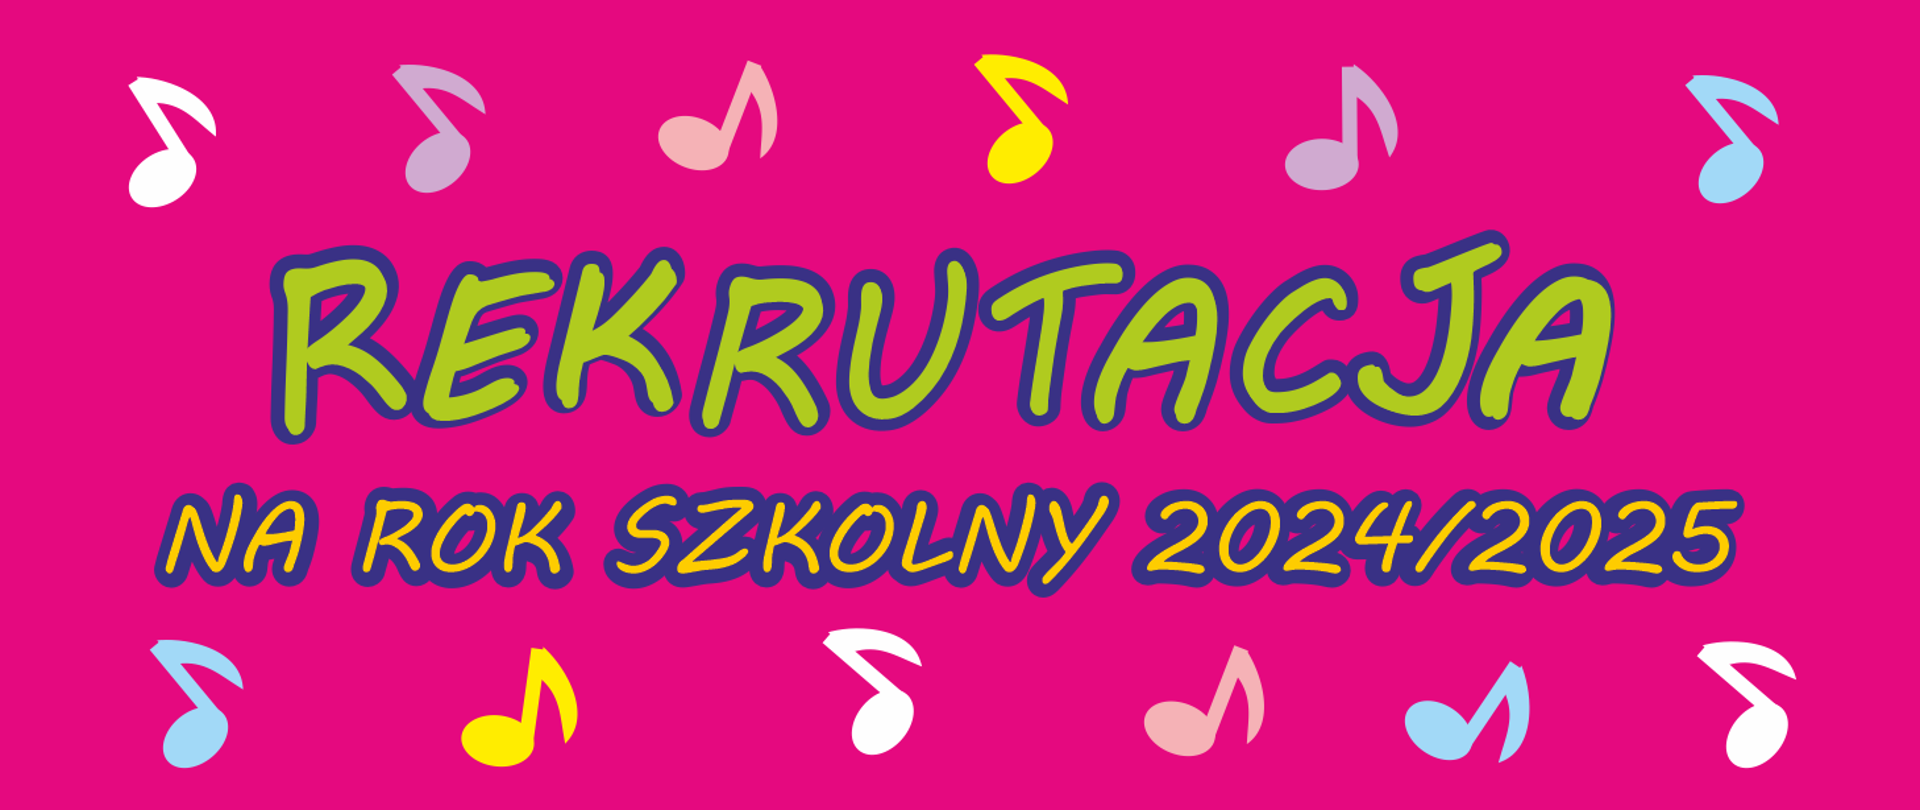 Grafika rekrutacyjna na różowym tle ozdobiona ikonografią kolorowych nut oraz tekst "Rekrutacja na rok szkolny 2024/2025"